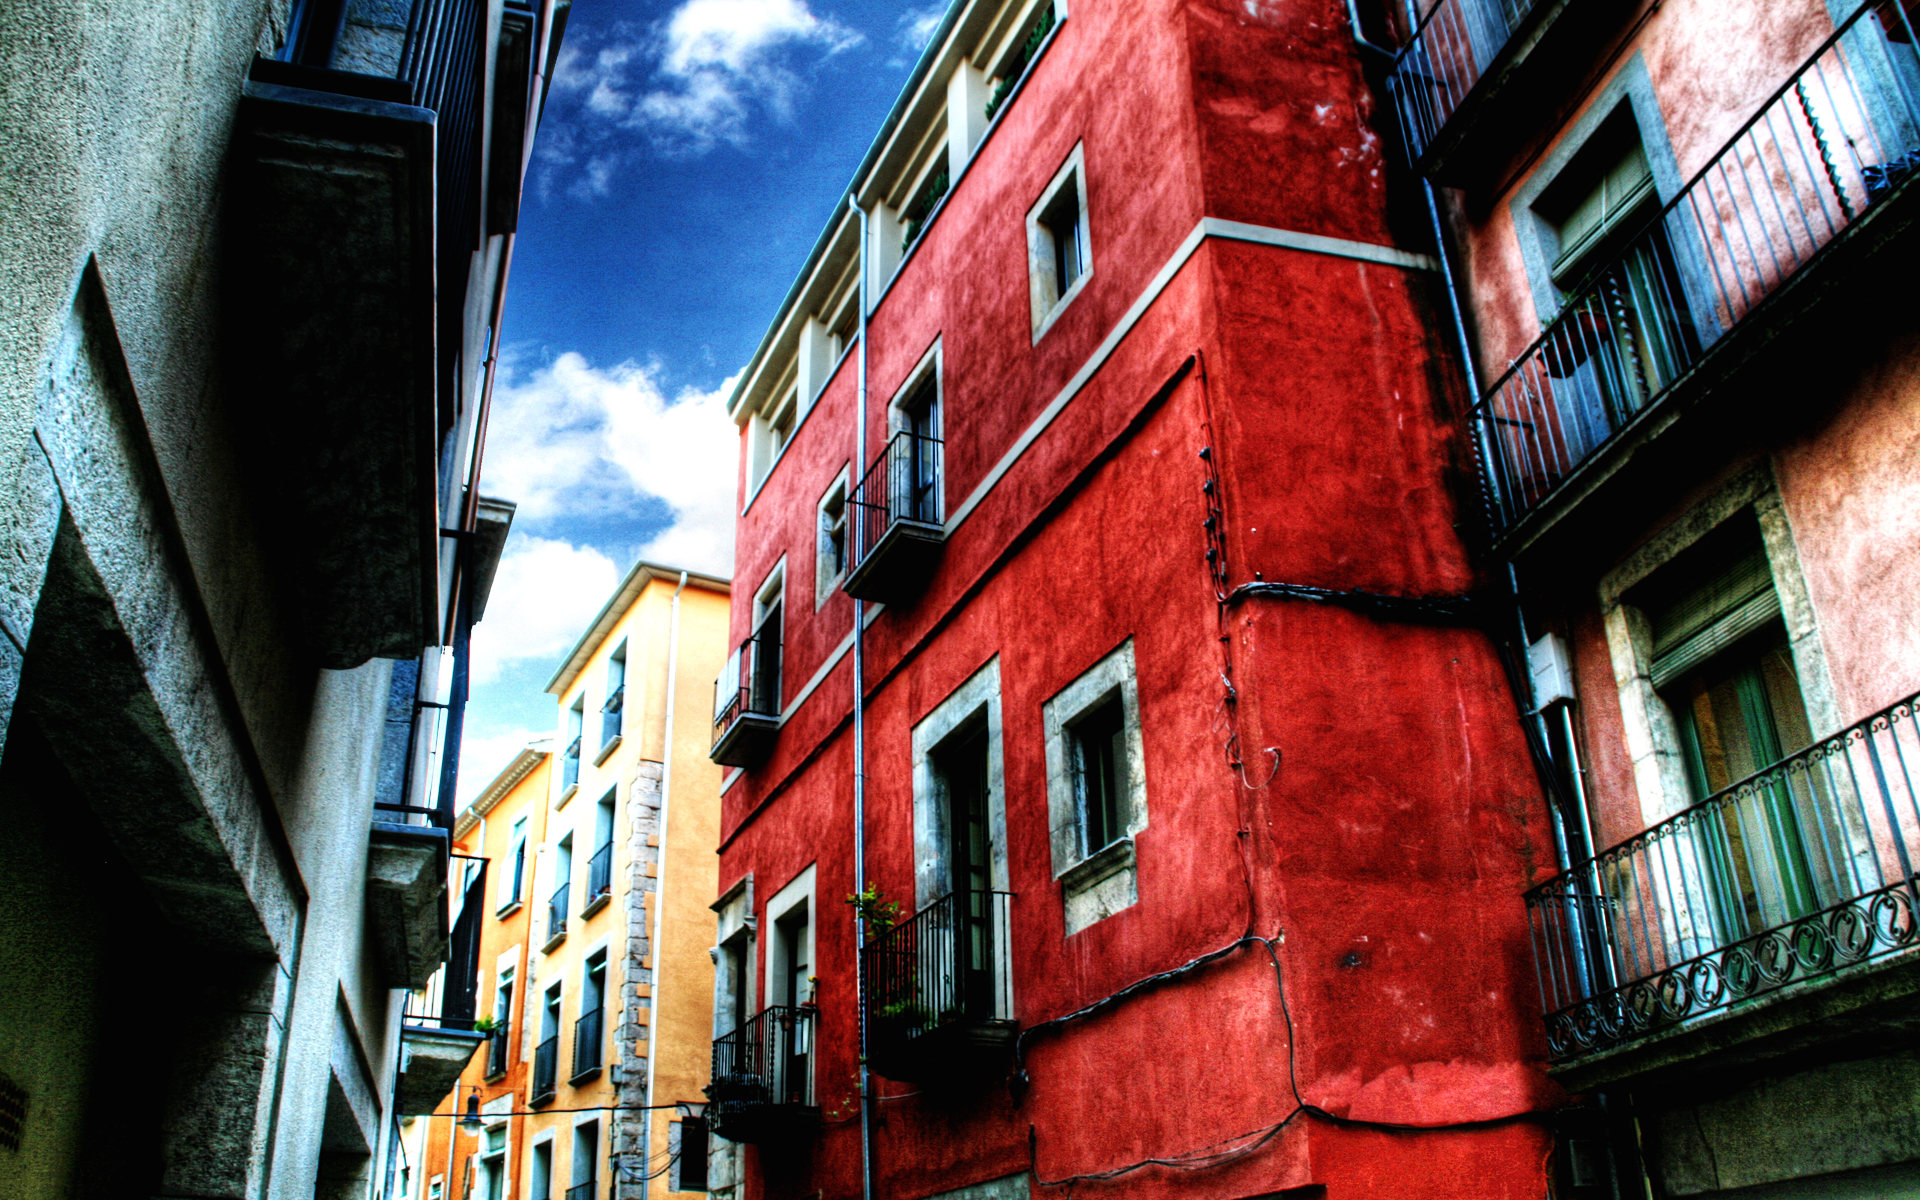 壁纸1920x1200HDR 西班牙城市映像 红房子 西班牙 Girona 赫罗纳城市风景壁纸 HDR 西班牙城市映像壁纸 HDR 西班牙城市映像图片 HDR 西班牙城市映像素材 人文壁纸 人文图库 人文图片素材桌面壁纸